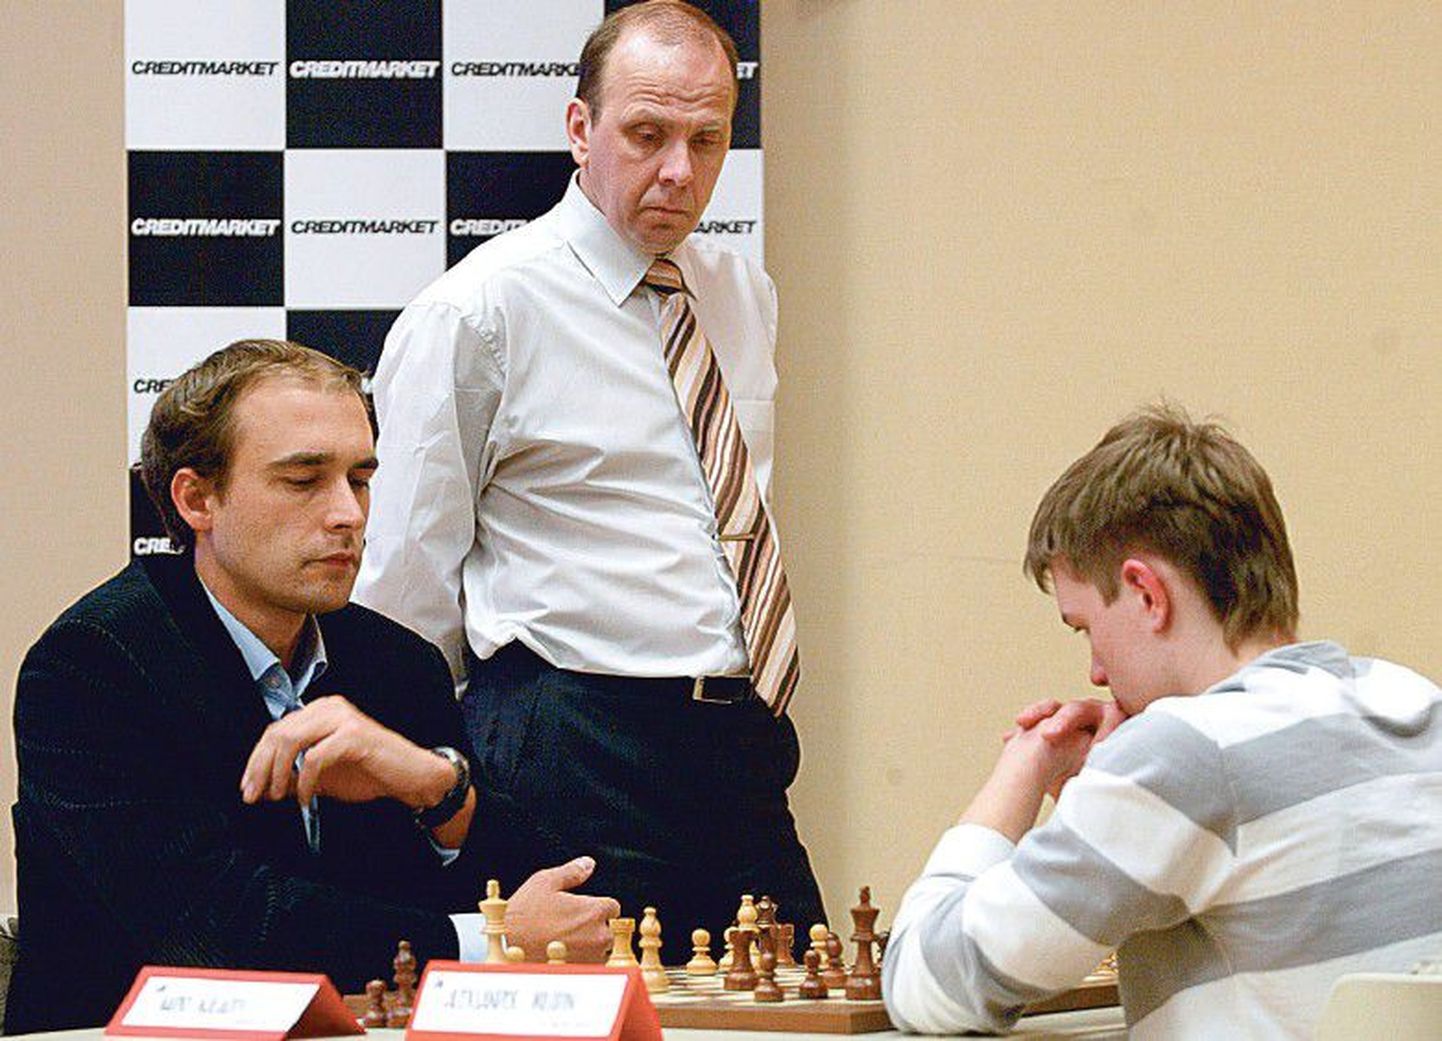 Чемпионат Эстонии 2009 года. Хендрик Олде (в центре) наблюдает за игрой гроссмейстеров Кайдо Кюлаотса (слева) и Александра Володина.